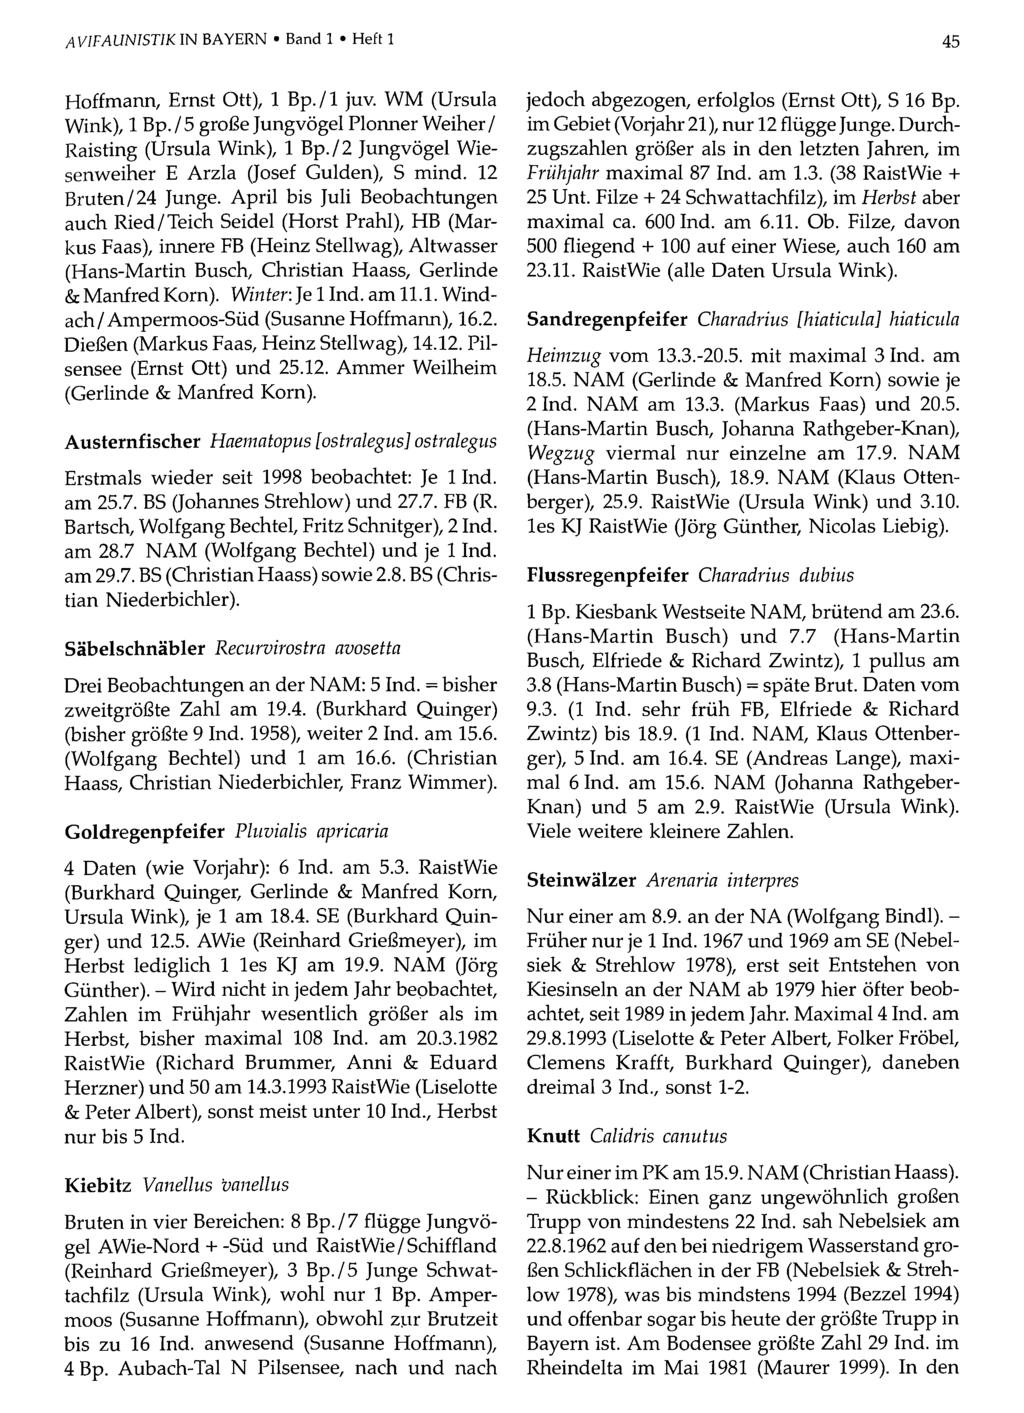 AVIFAUNISTIK IN BAYERN Band Ornithologische 1 Heft 1Gesellschaft Bayern, download unter www.biologiezentrum.at 45 Hoffmann, Ernst Ott), 1 Bp. /1 juv. WM (Ursula Wink), 1 Bp.